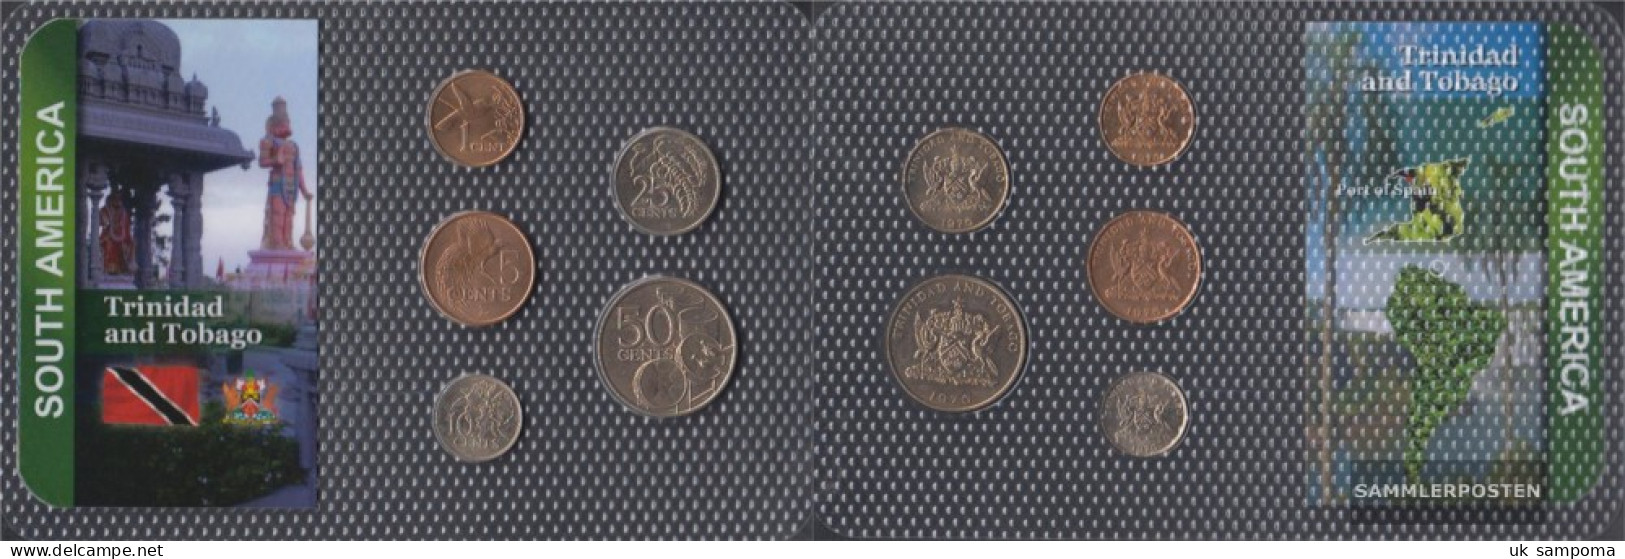 Trinidad And Tobago Stgl./unzirkuliert Kursmünzen Stgl./unzirkuliert From 1973 1 CENT Until 50 CENTs - Trinidad & Tobago